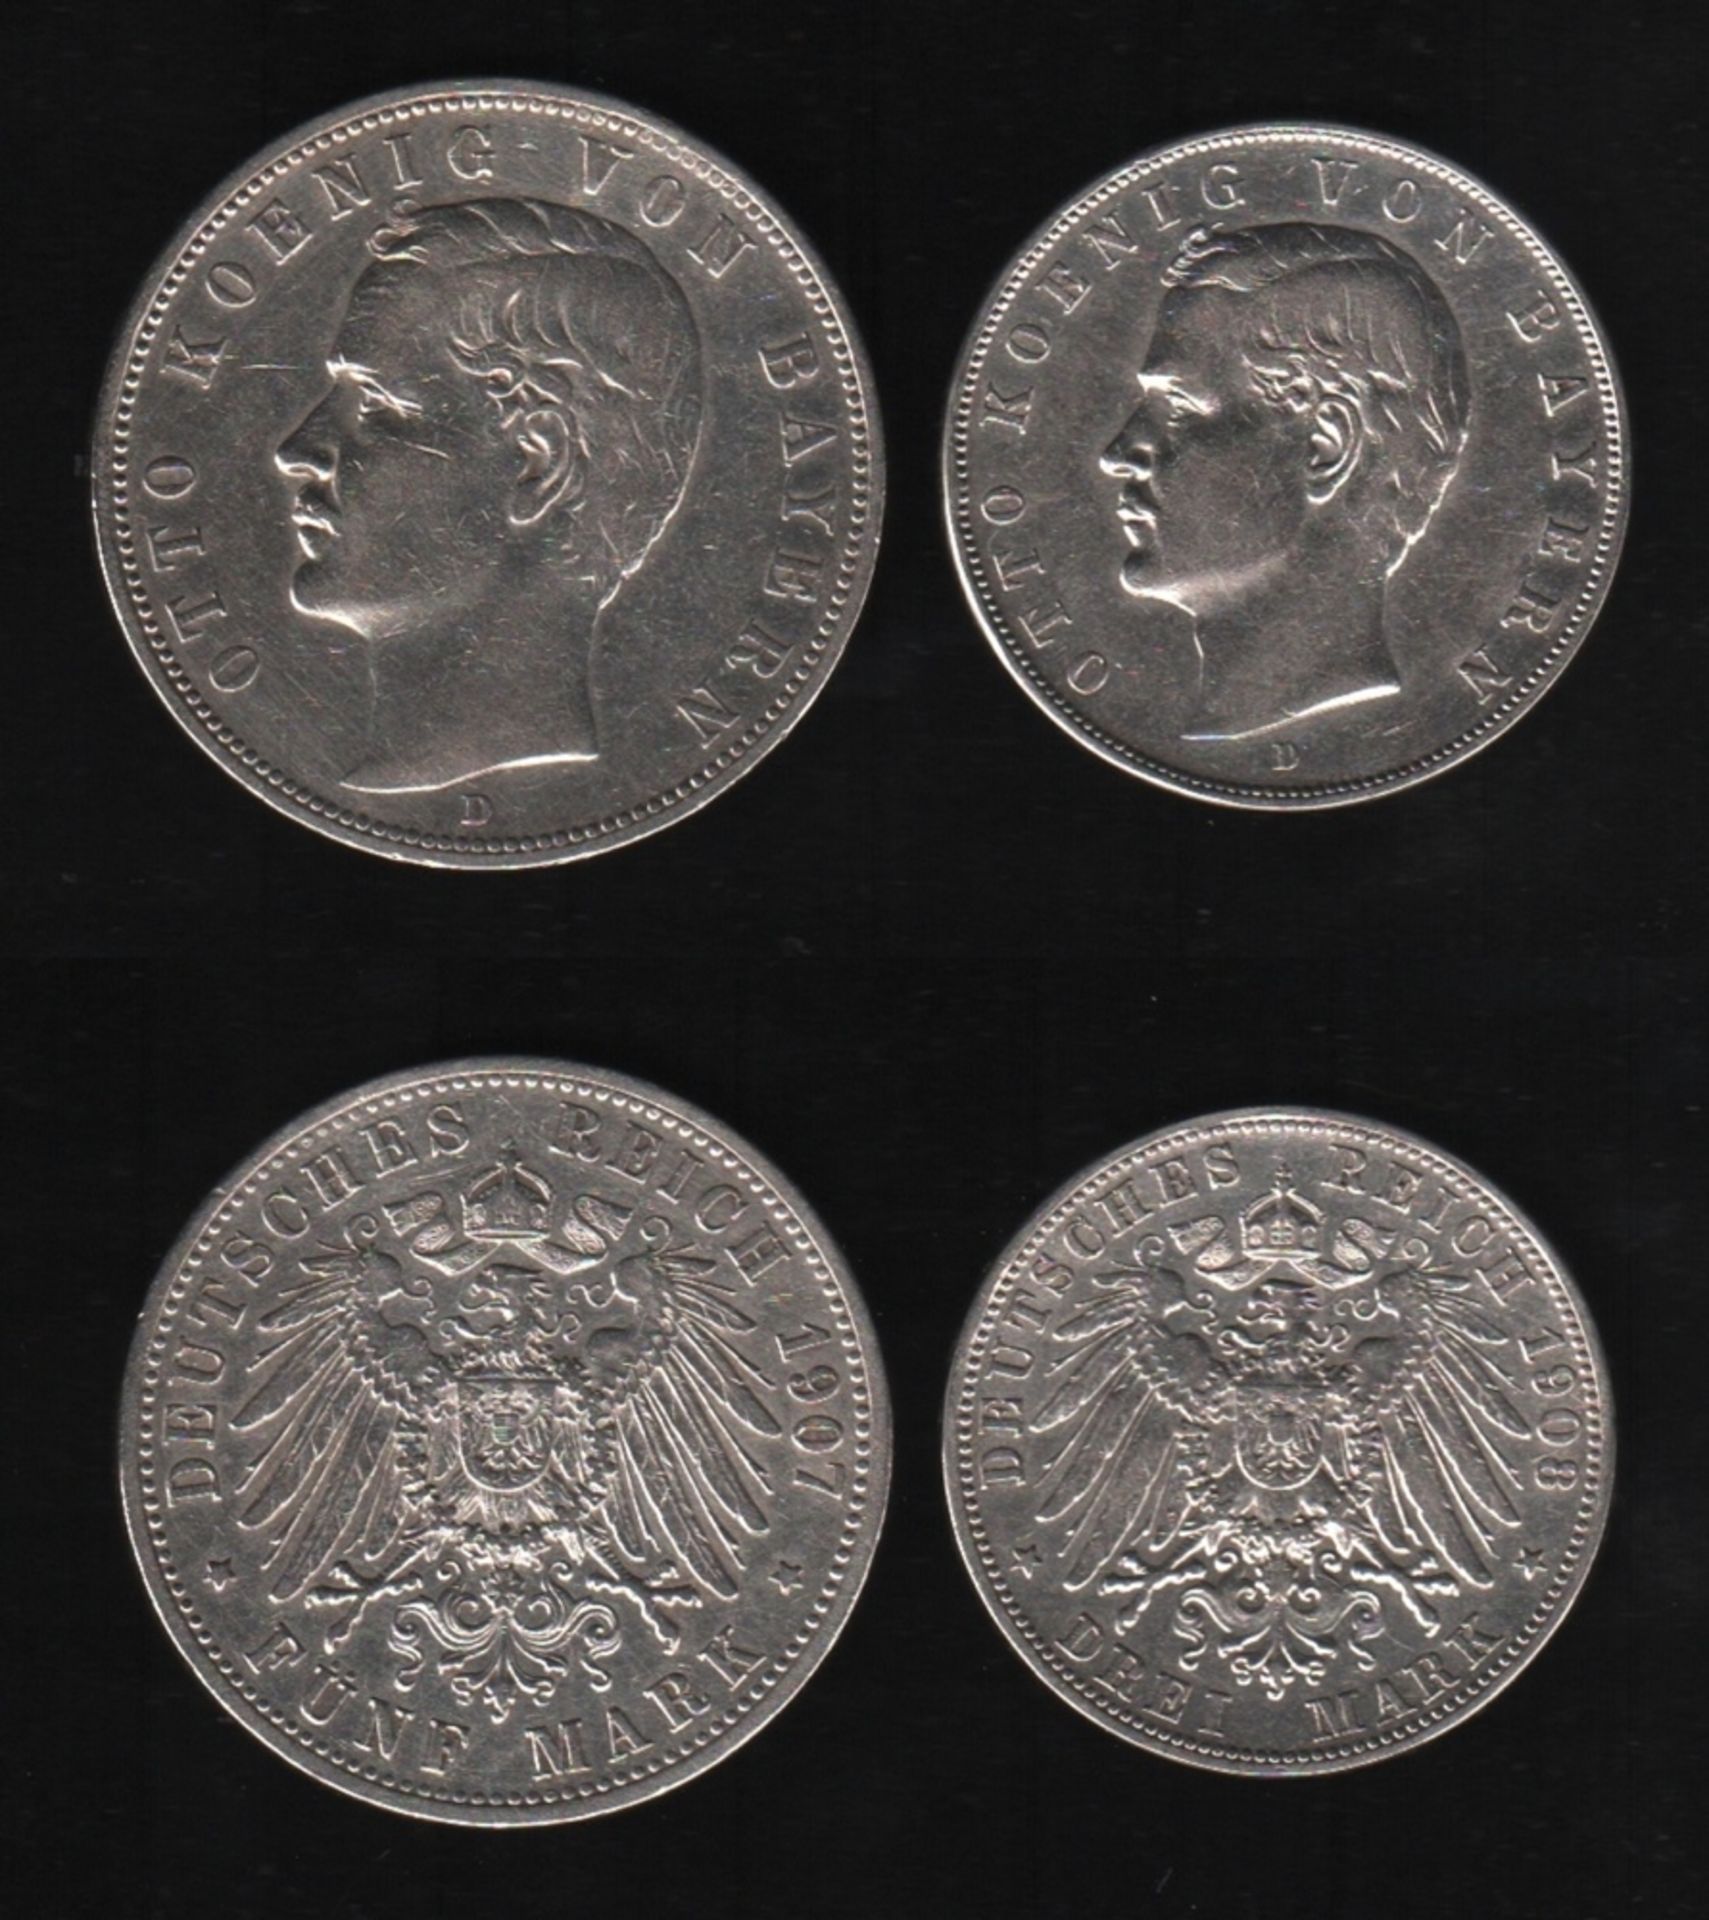 Deutsches Reich. 2 Silbermünzen. 3 und 5 Mark. Otto, König von Bayern. D 1908 und 1907. Vorderseite: